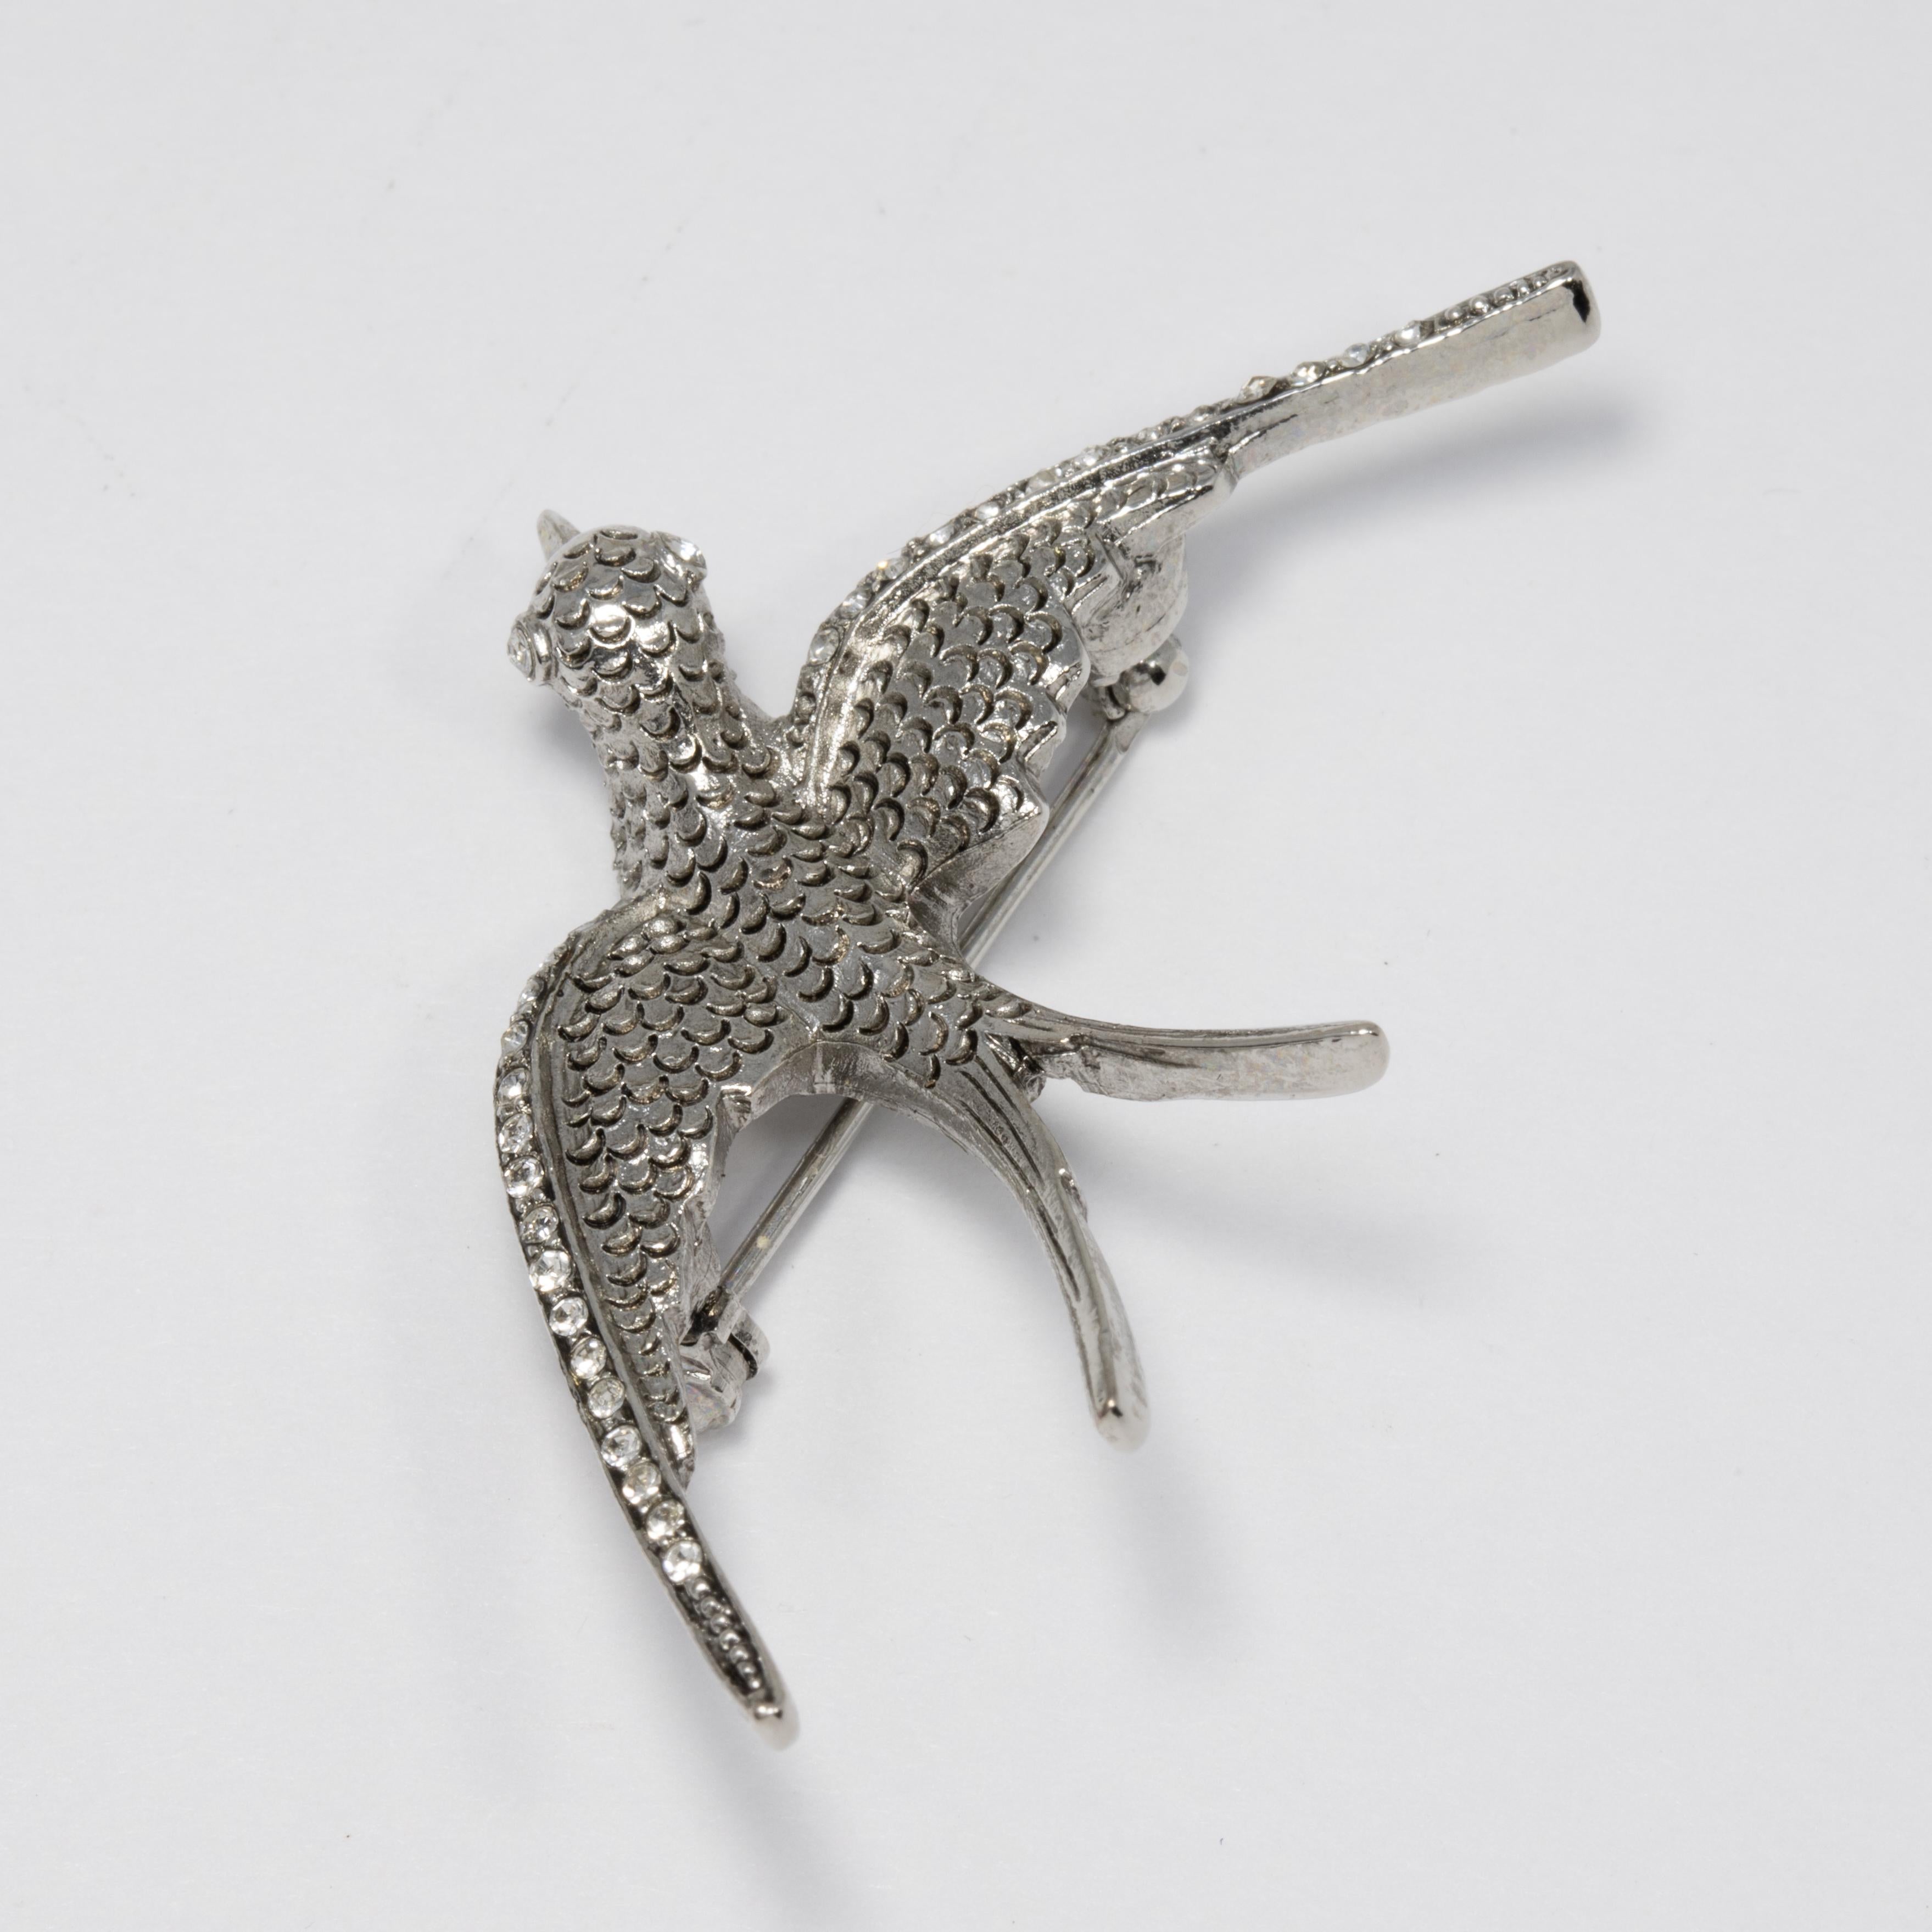 A sophisticated bird brooch by Oscar de la Renta, featuring a silver-tone dove accented with crystals.

Hallmarks: Oscar de la Renta, Made in USA